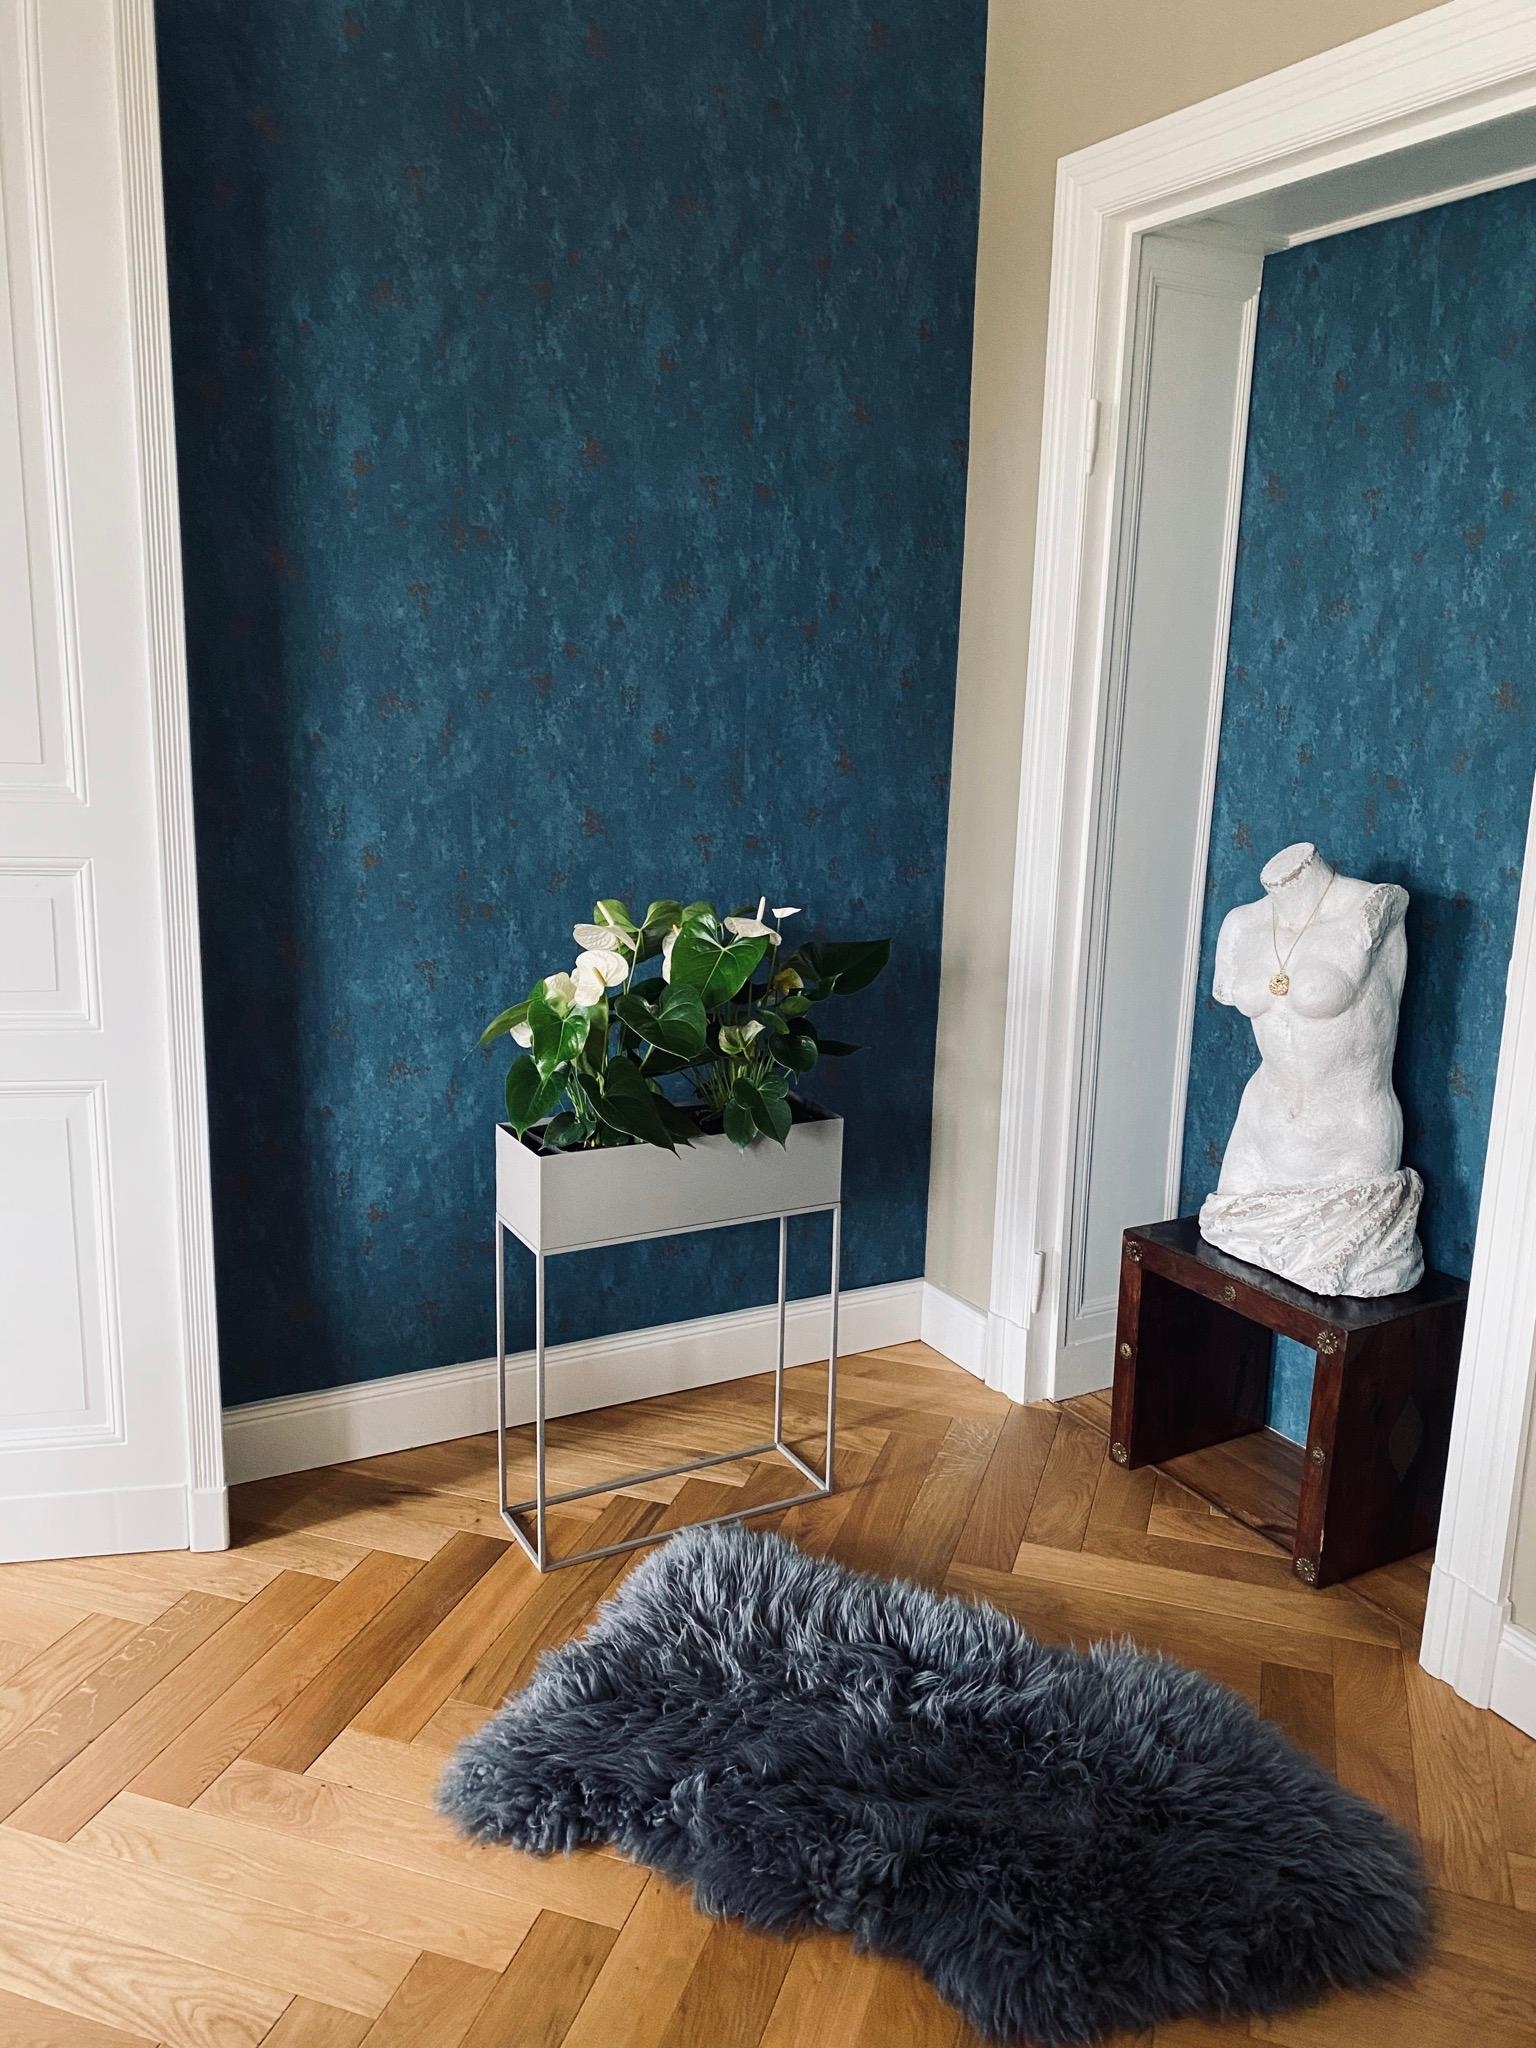 Wir nennen unser Esszimmer liebevoll: blauer Salon 💙 #esszimmer #büste #tapete #blau #fell #fischgrätenpakett